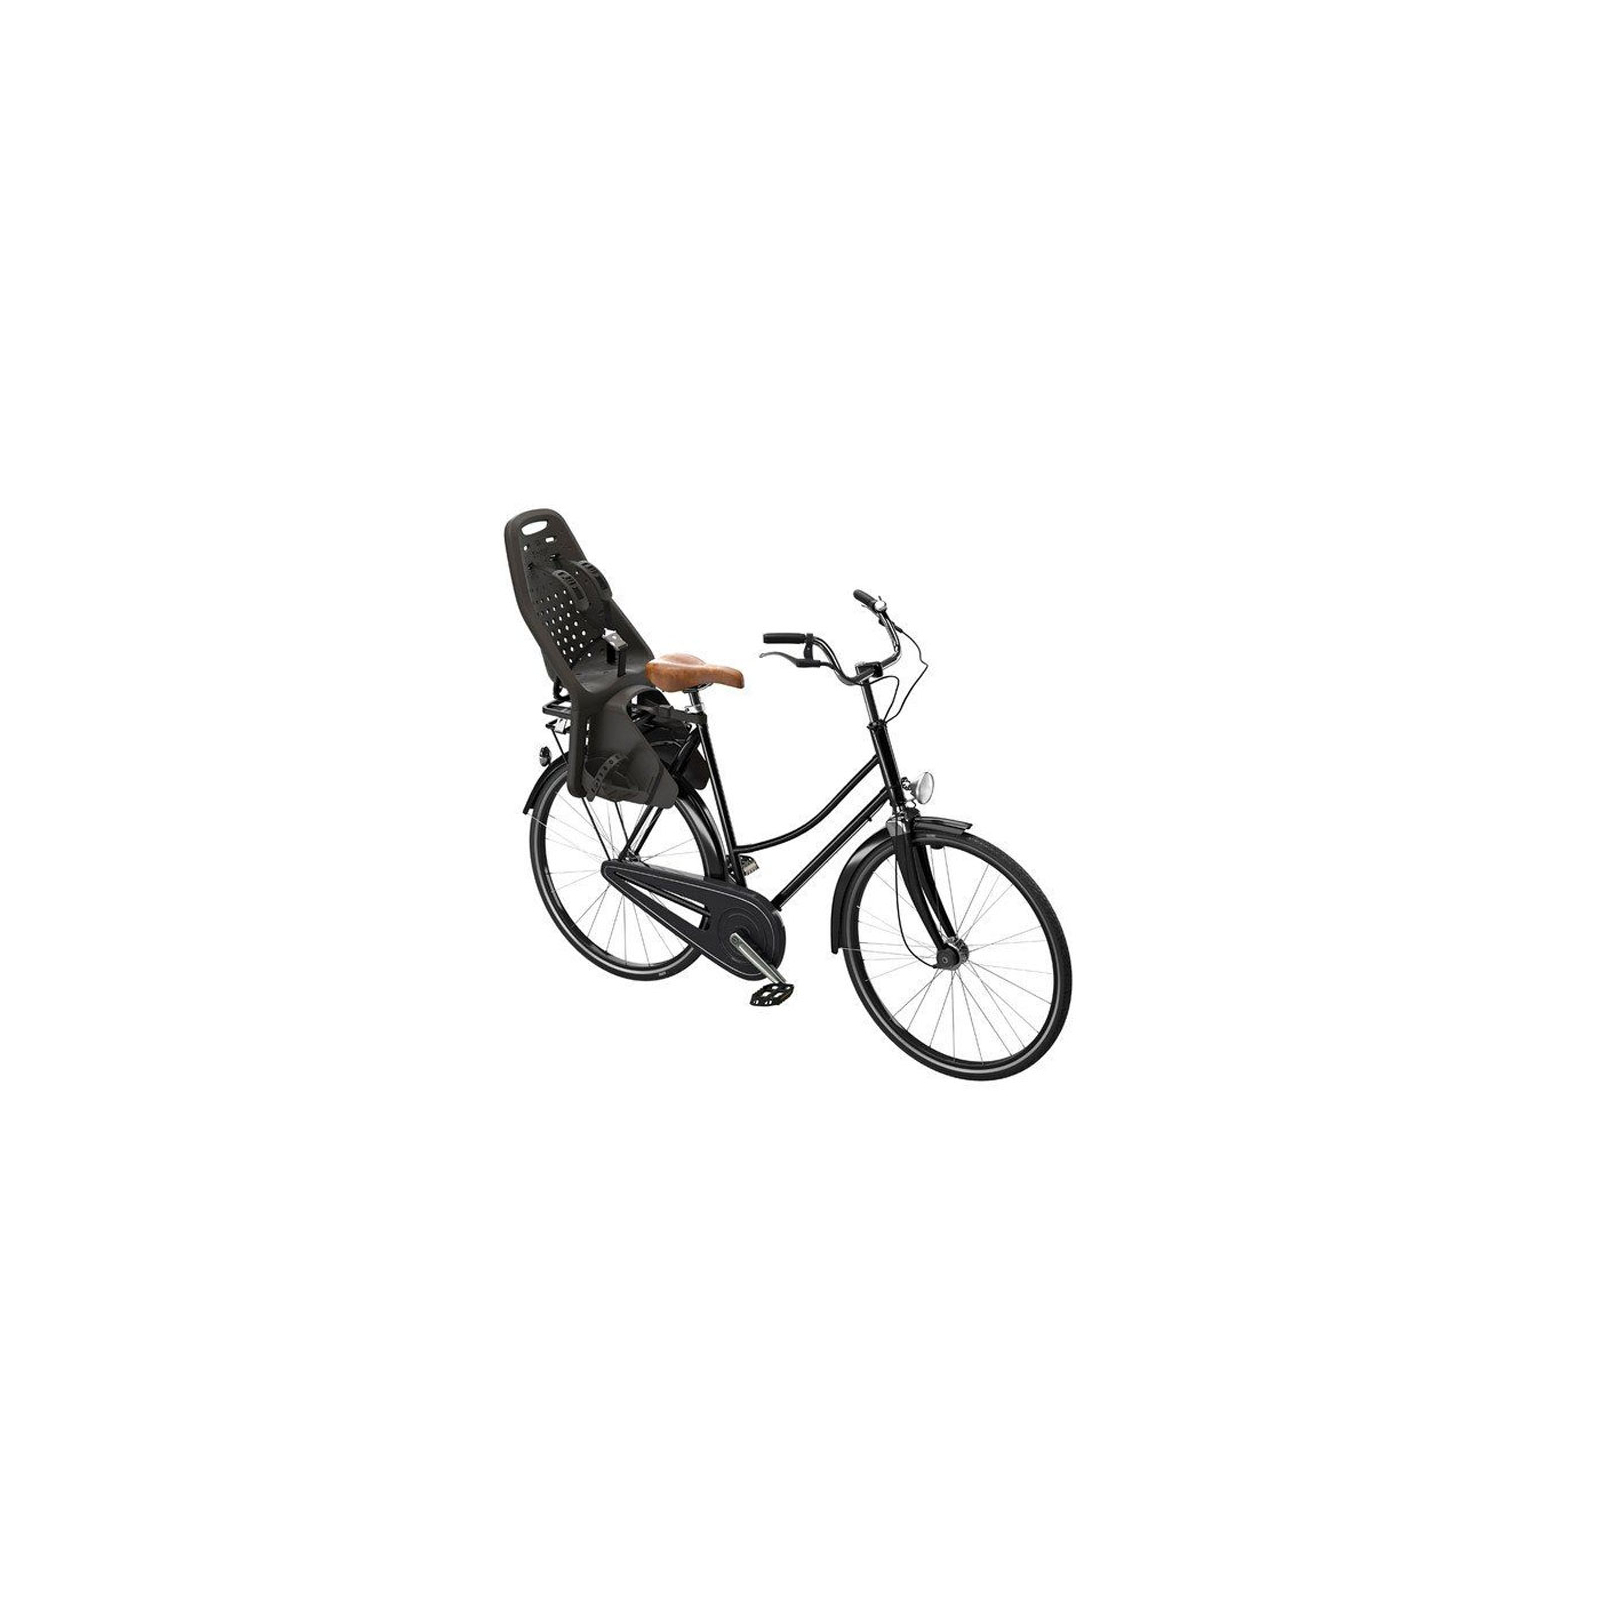 Детское велокресло Thule Yepp Maxi Easy Fit Black (TH12020211) изображение 4